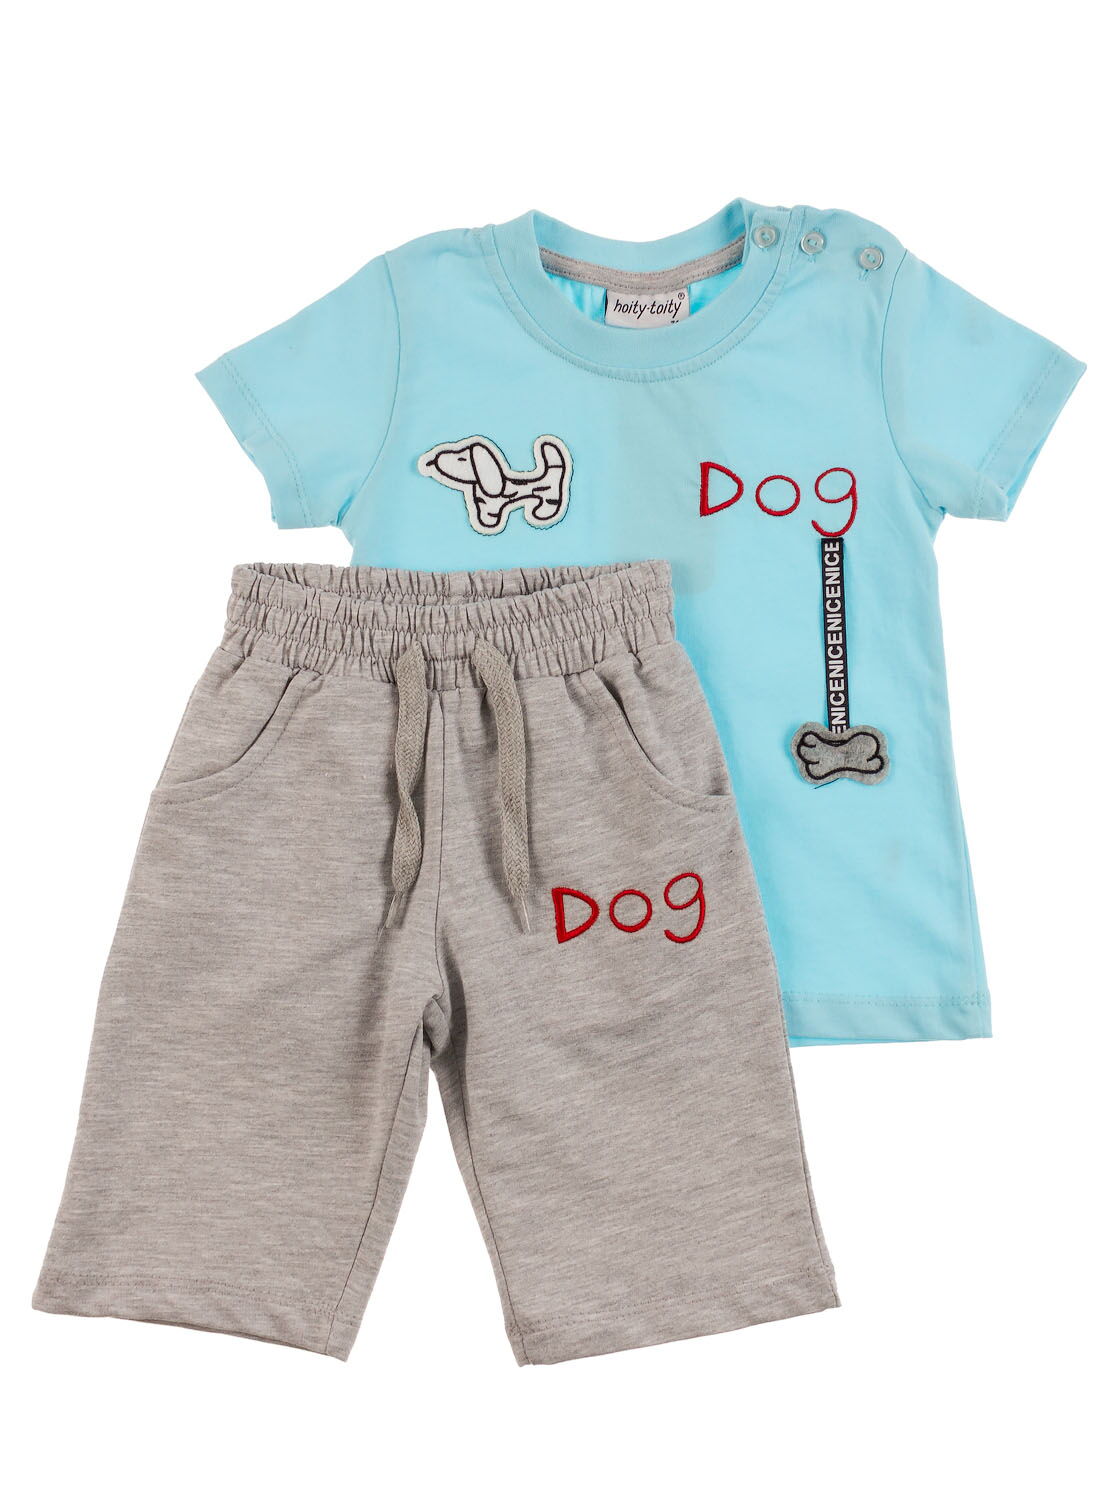 Комплект футболка и шорты Hoity-toity Dog голубой 0059 - цена